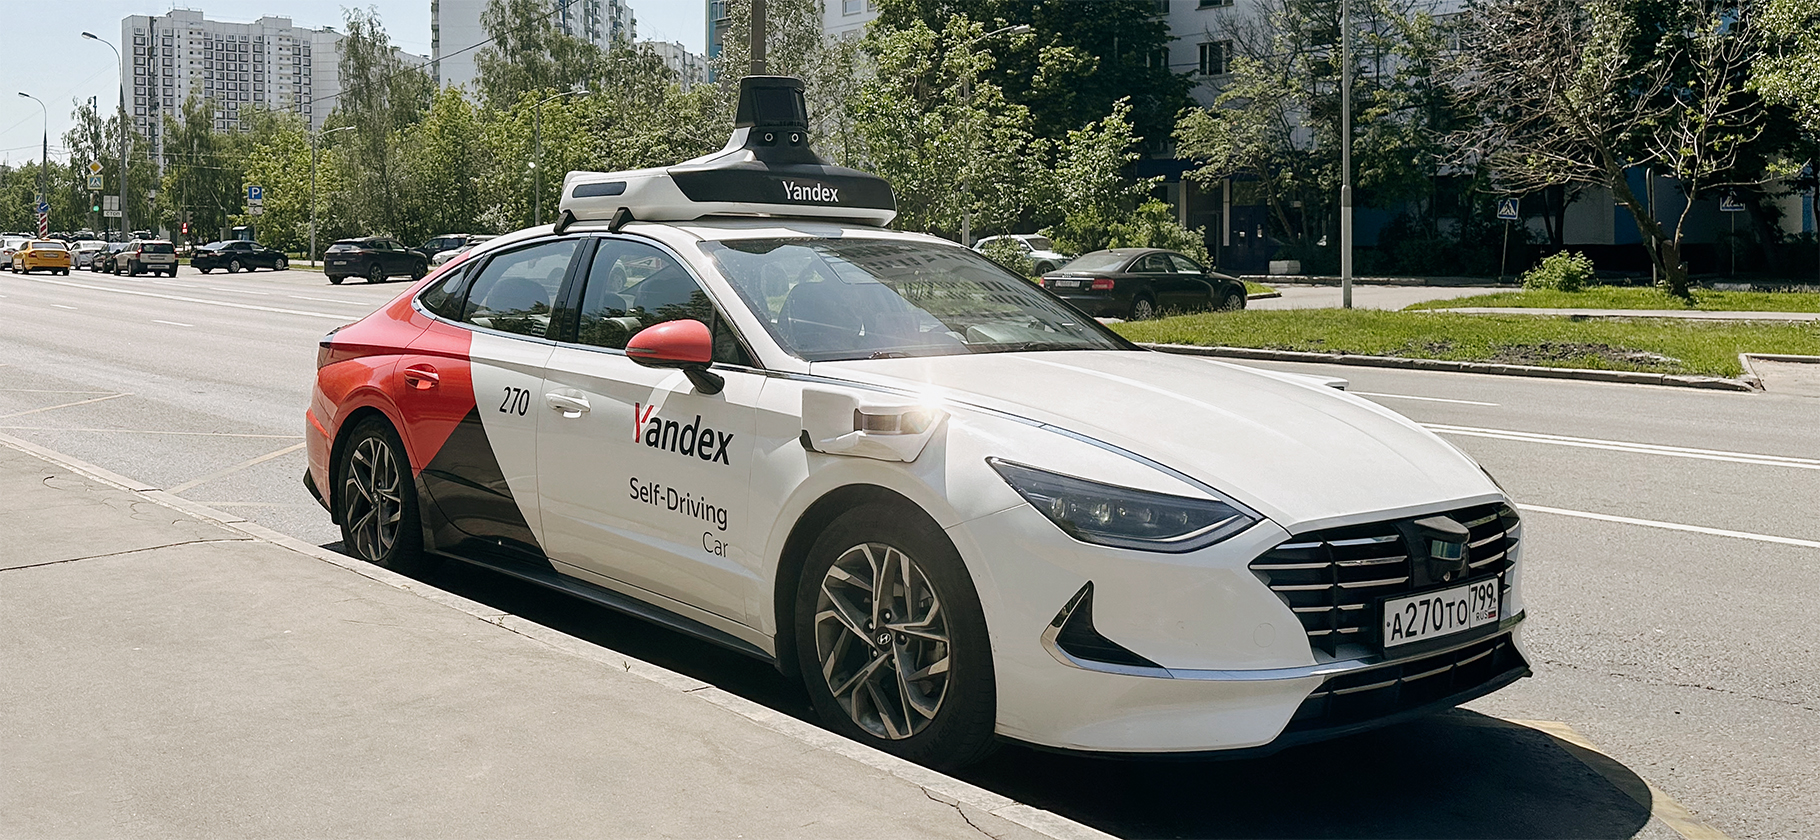 «Яндекс» запустил беспилотное такси в Москве: делимся впечатлениями от тест-драйва